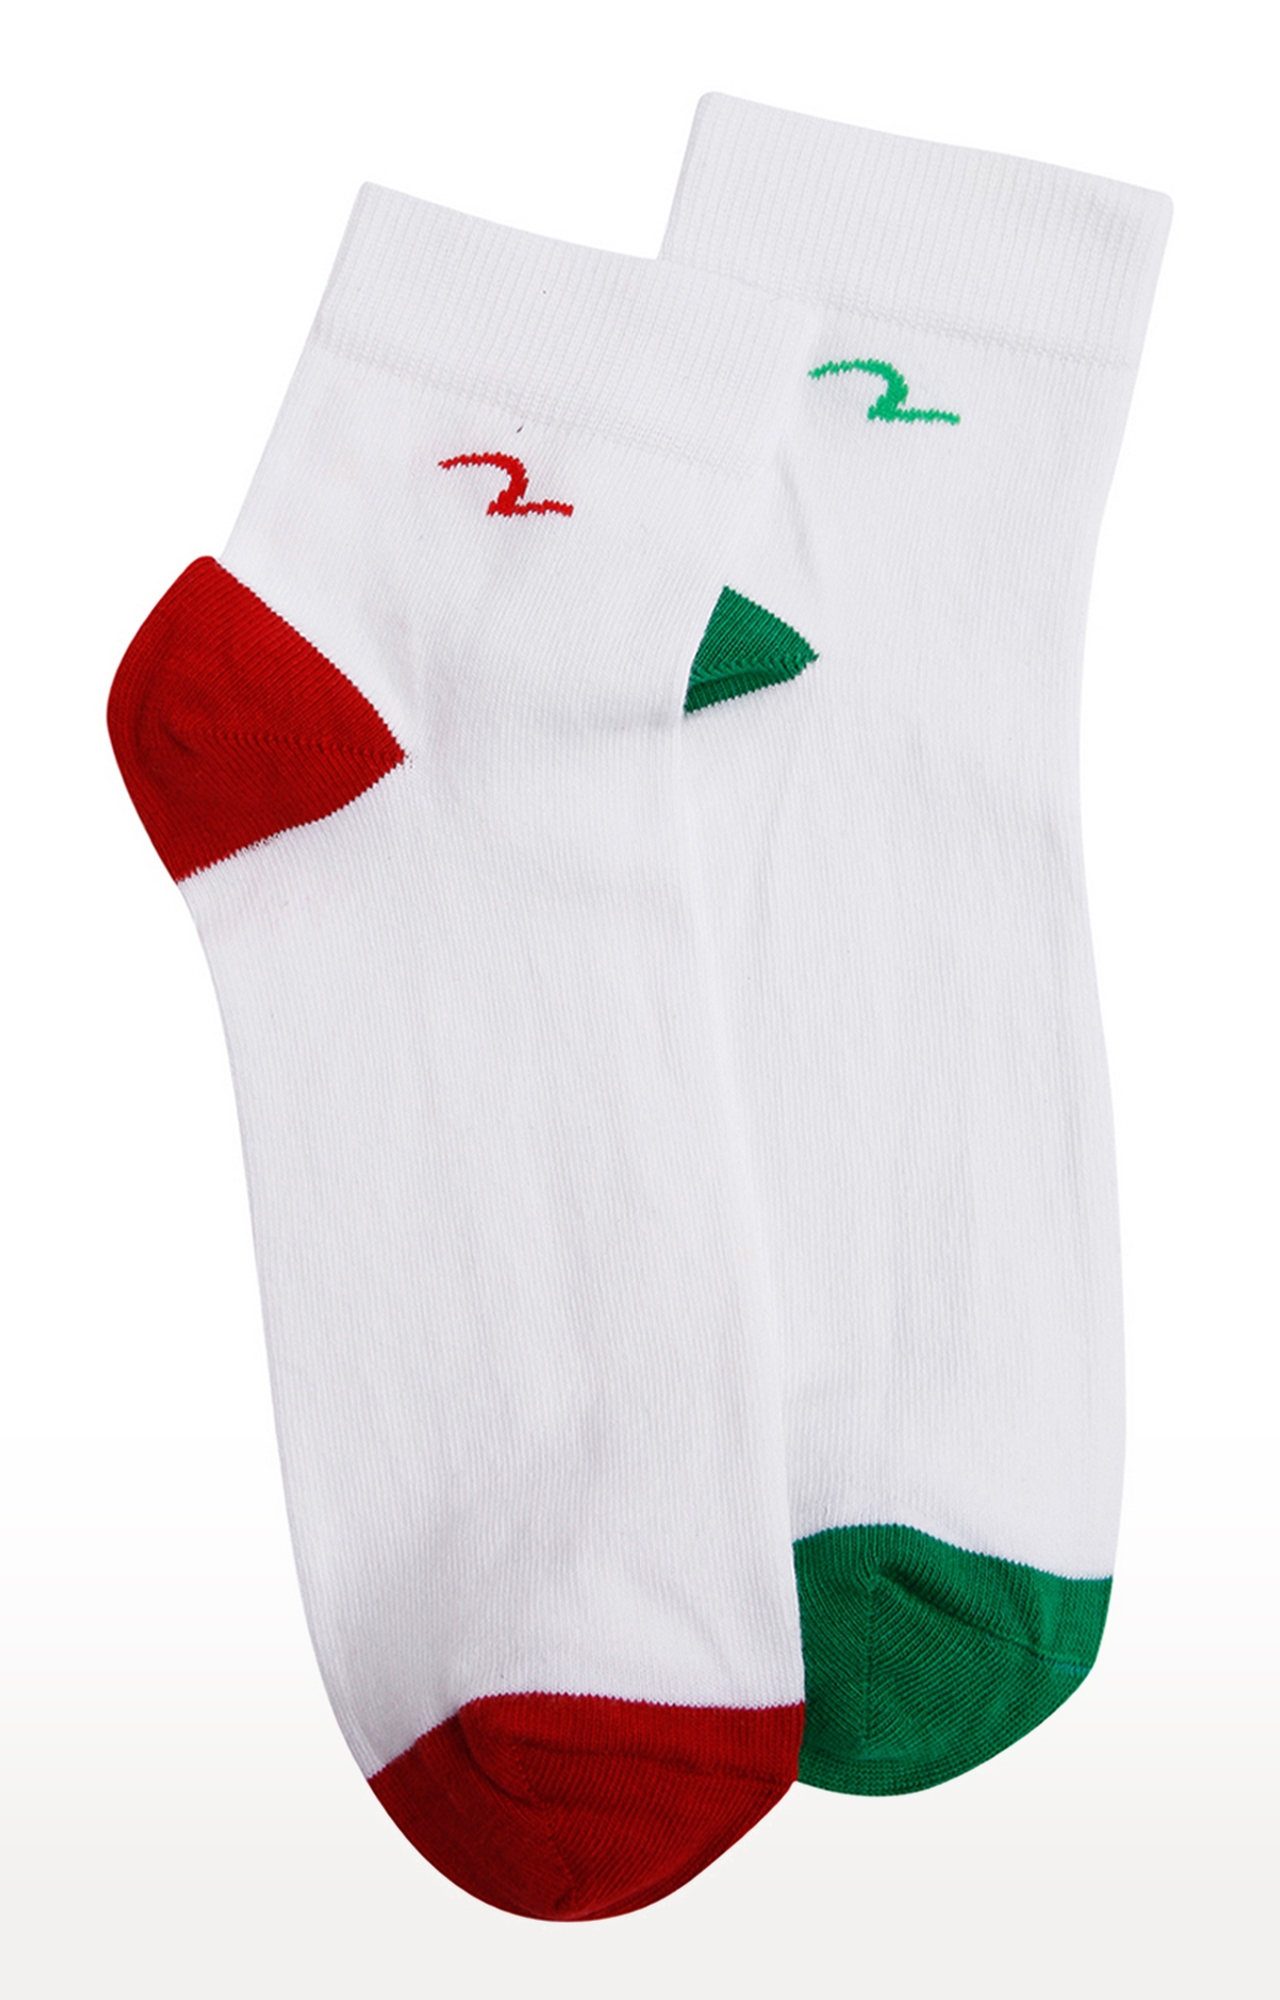 spykar | Spykar Green And Red Socks - Pair Of 2 3